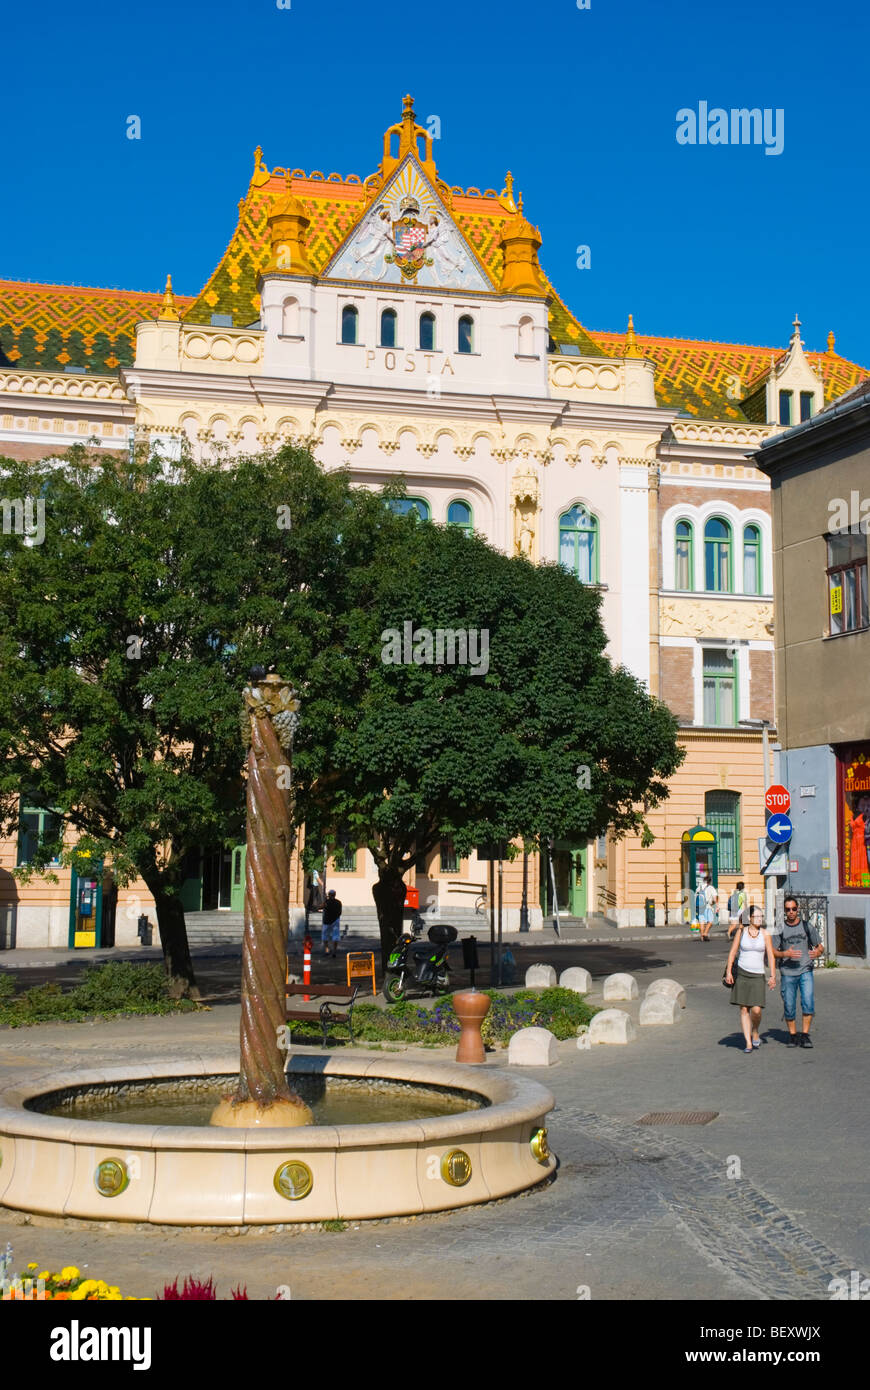 Citrom utca strada pedonale con il principale ufficio postale edificio in Ungheria Pecs in Europa Foto Stock